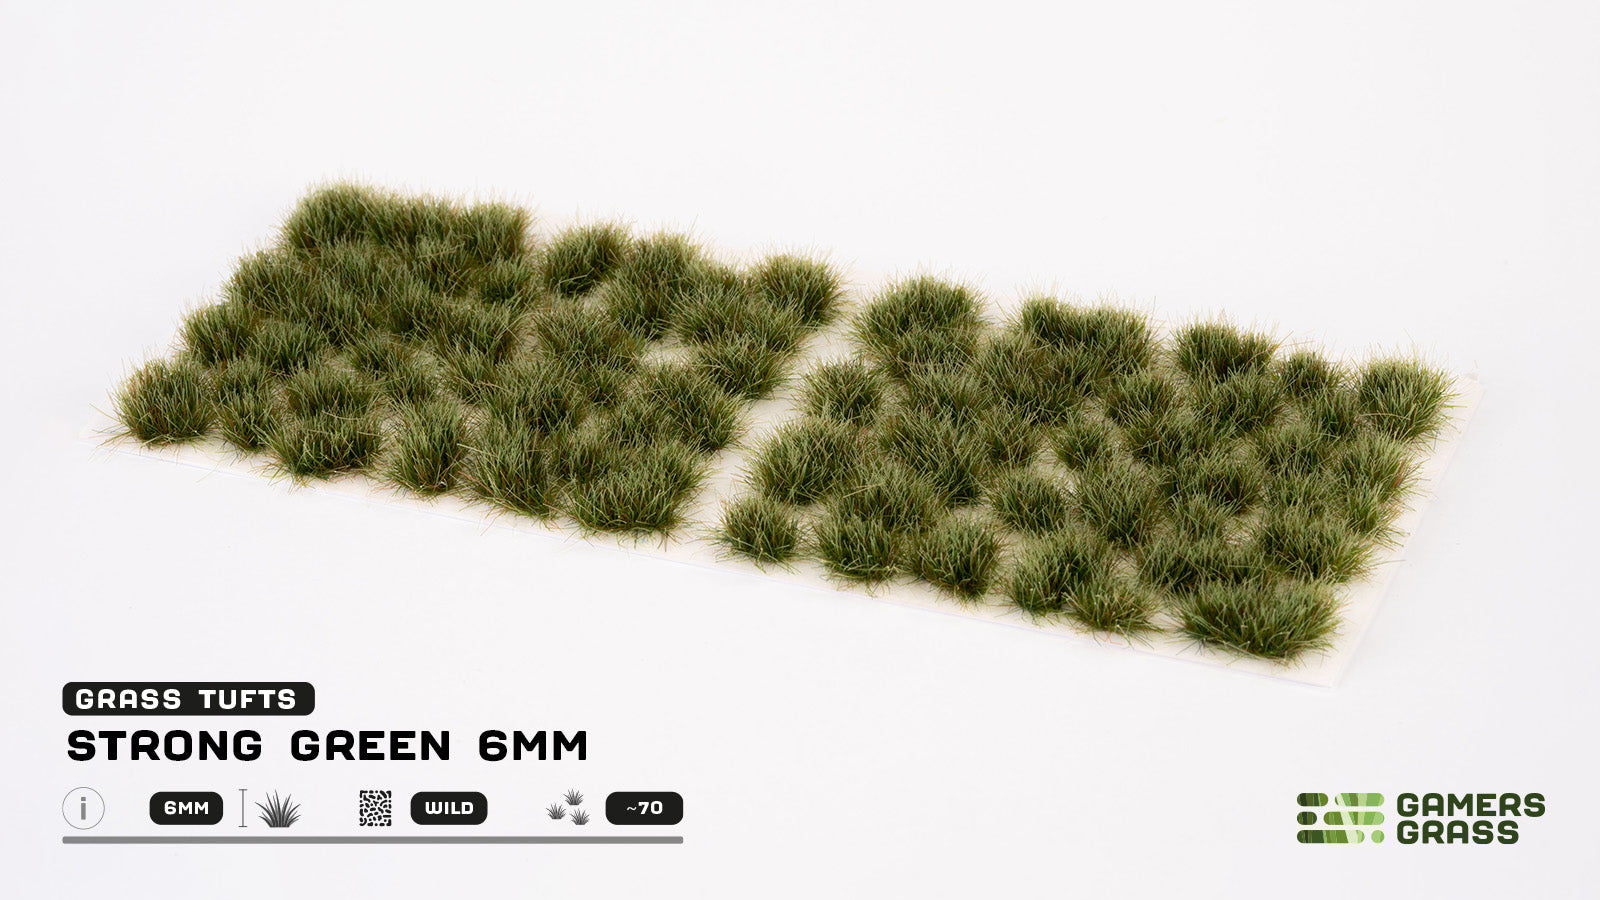 GamersGrass Grass Tufts: Strong Green 6mm - Wild | Gauntlet Hobbies - Angola